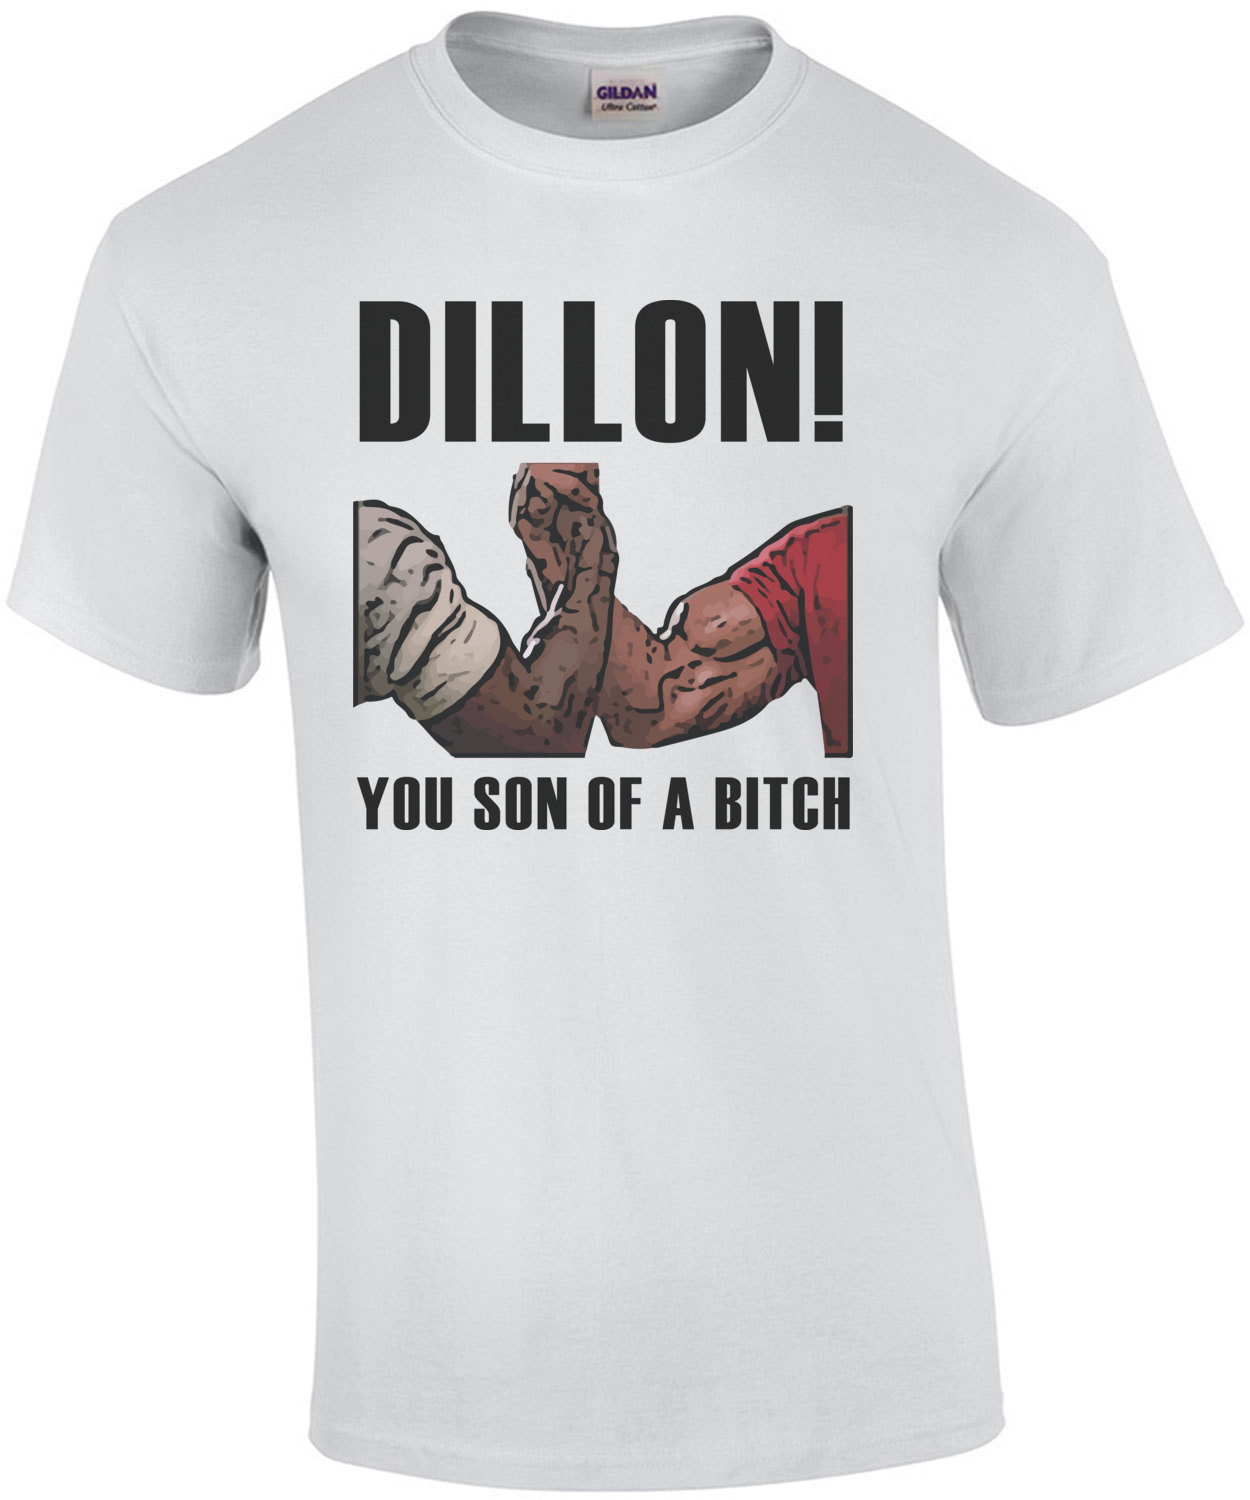 Dillon! You son of a bitch - Predator T-Shirt - Arnold Schwarzenegger